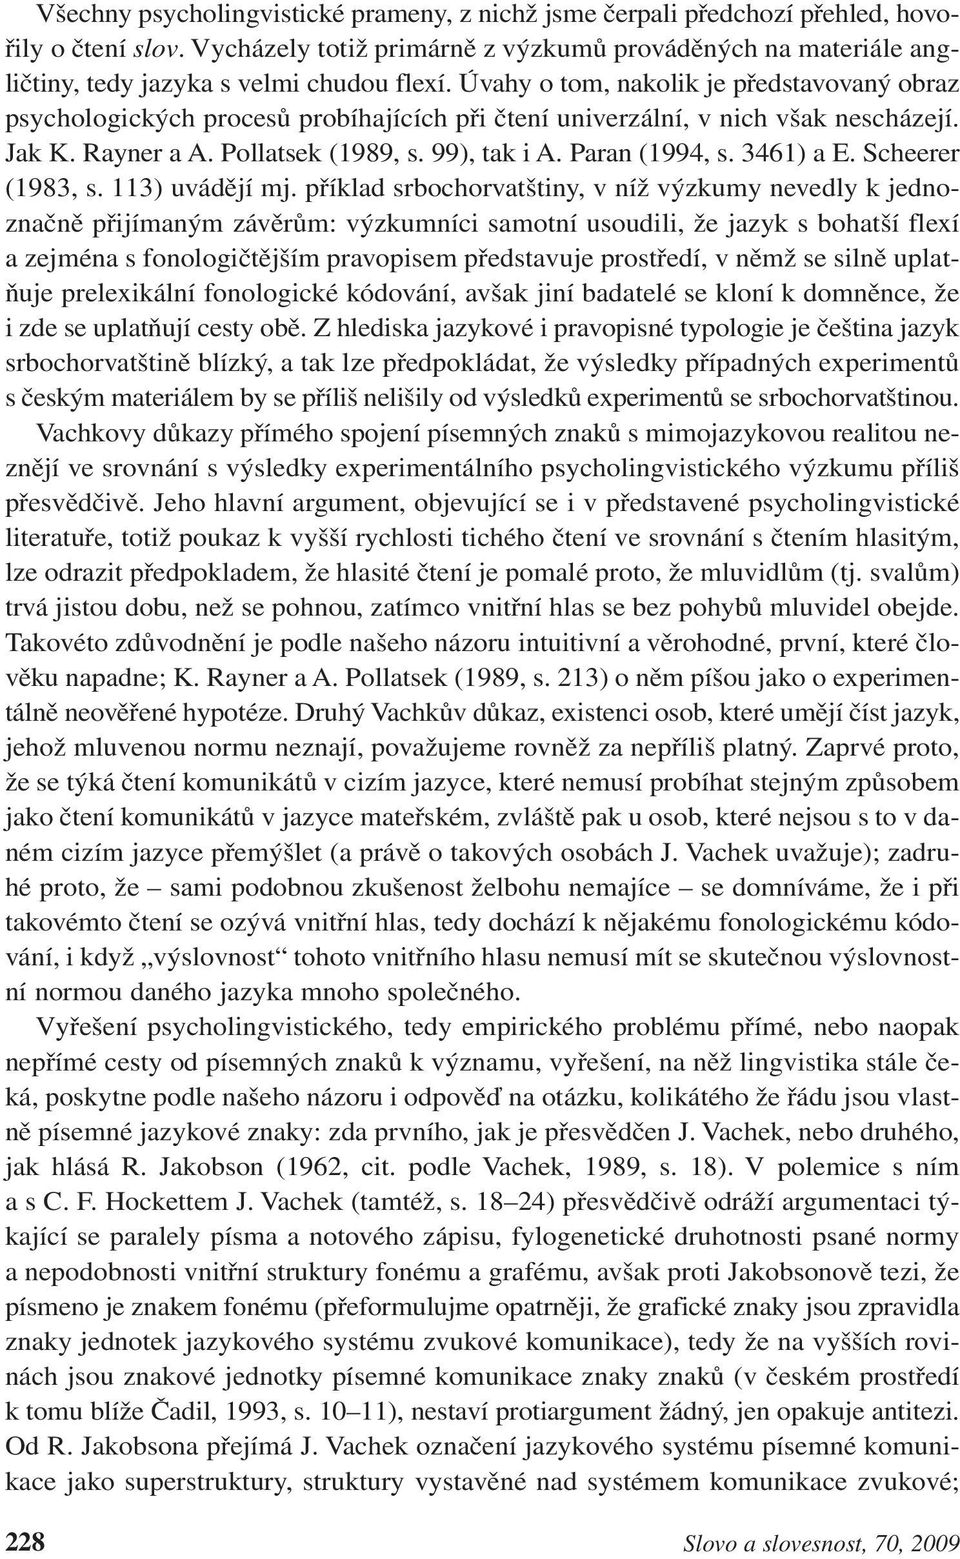 Úvahy o tom, nakolik je představovaný obraz psychologických procesů probíhajících při čtení univerzální, v nich však nescházejí. Jak K. Rayner a A. Pollatsek (1989, s. 99), tak i A. Paran (1994, s.